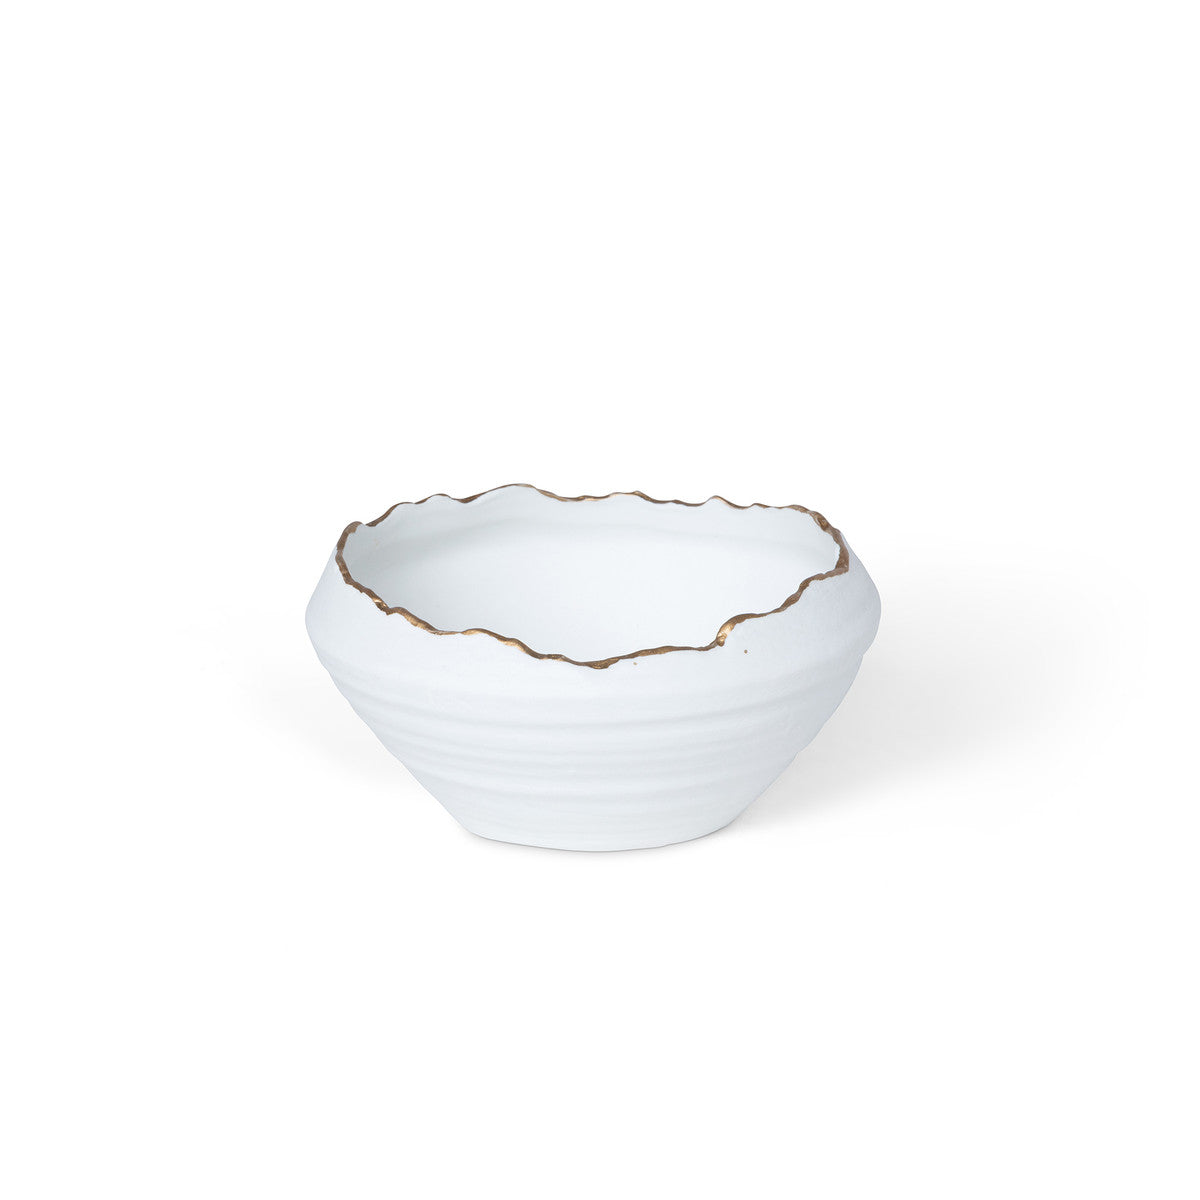 Gilded White Porcelain Organic Edge Bowl, 6"